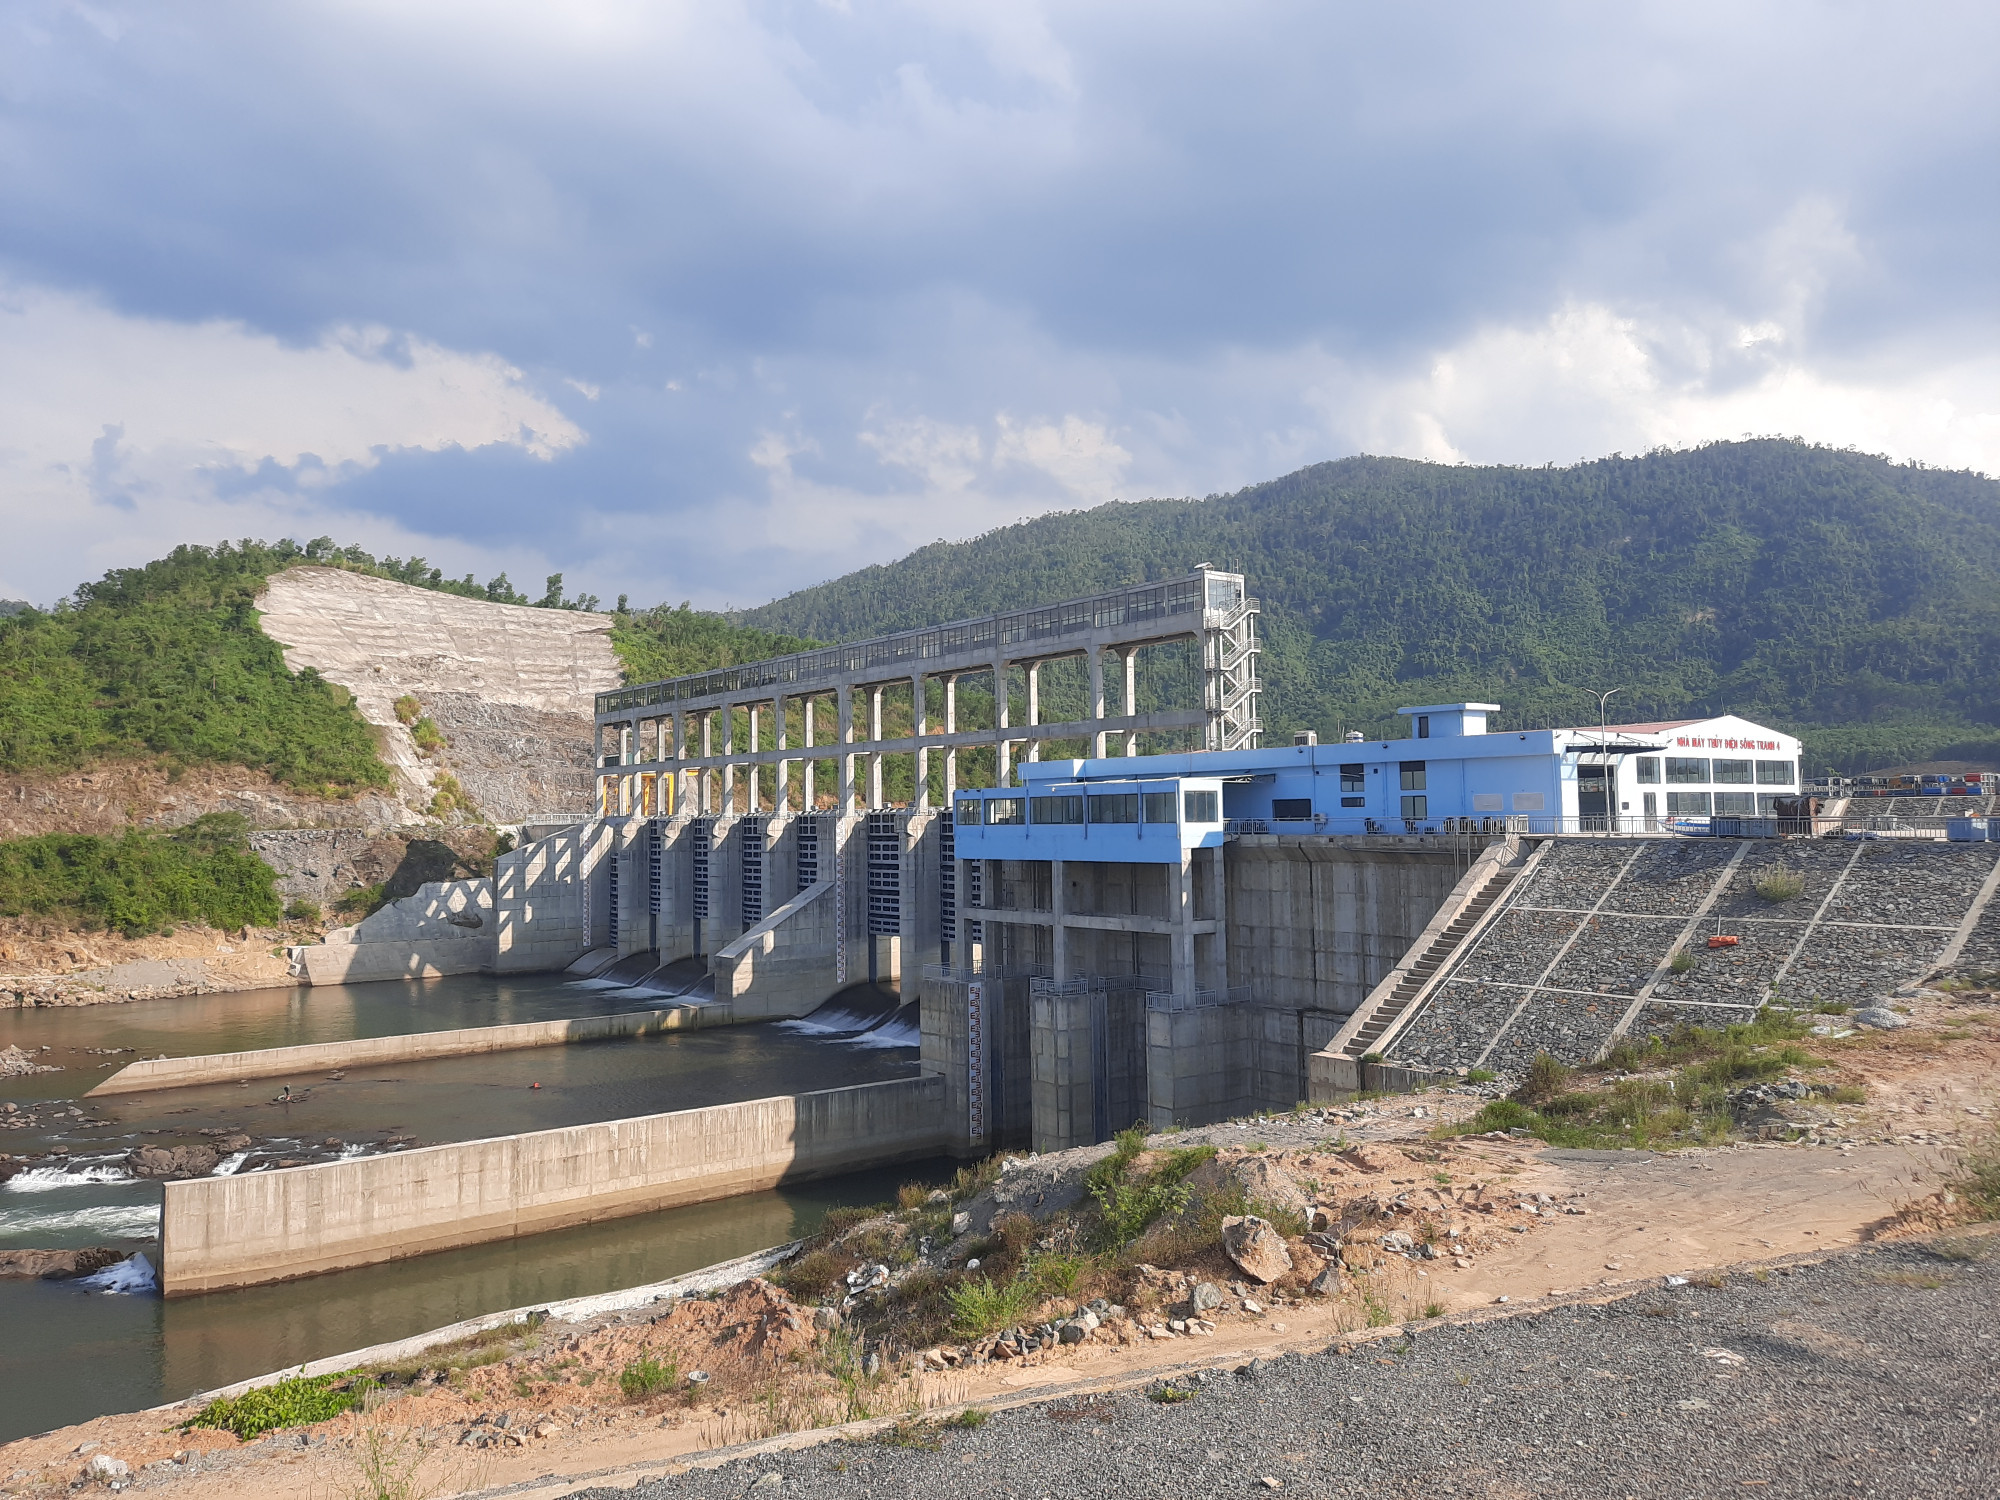 Thủy điện Sông Tranh 4 đã hoàn thành toàn bộ công tác xây dựng và lắp đặt thiết bị, đảm bảo sẵn sàng phát điện từ tháng 12/2020 nhưng đến nay vẫn im lìm vì có 18 hộ dân vẫn chưa chịu giao đất.